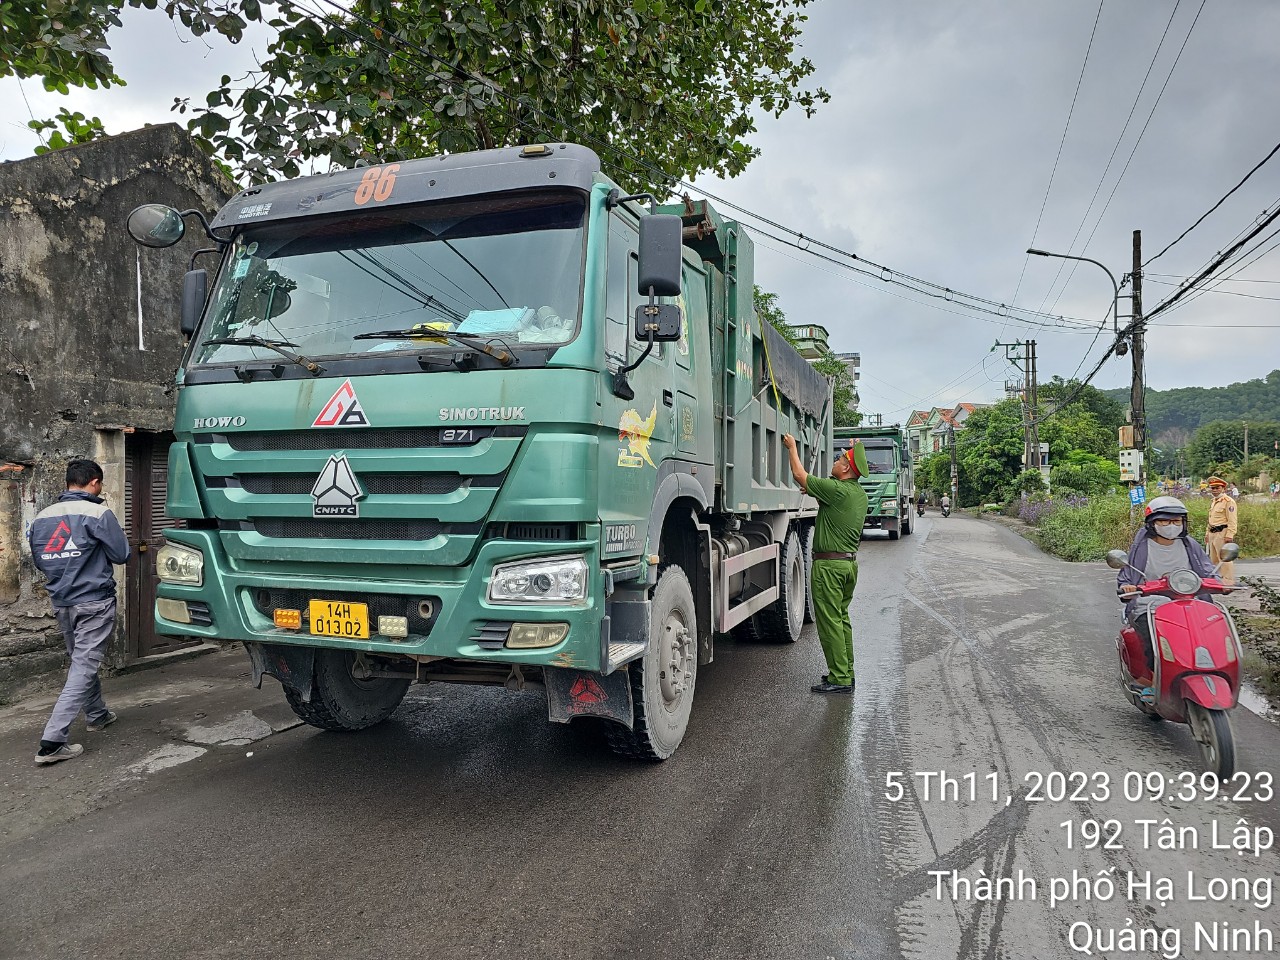 Quảng Ninh vào cuộc vụ xe “hổ vồ” nườm nượp chạy trên đường dân cư - Ảnh 1.